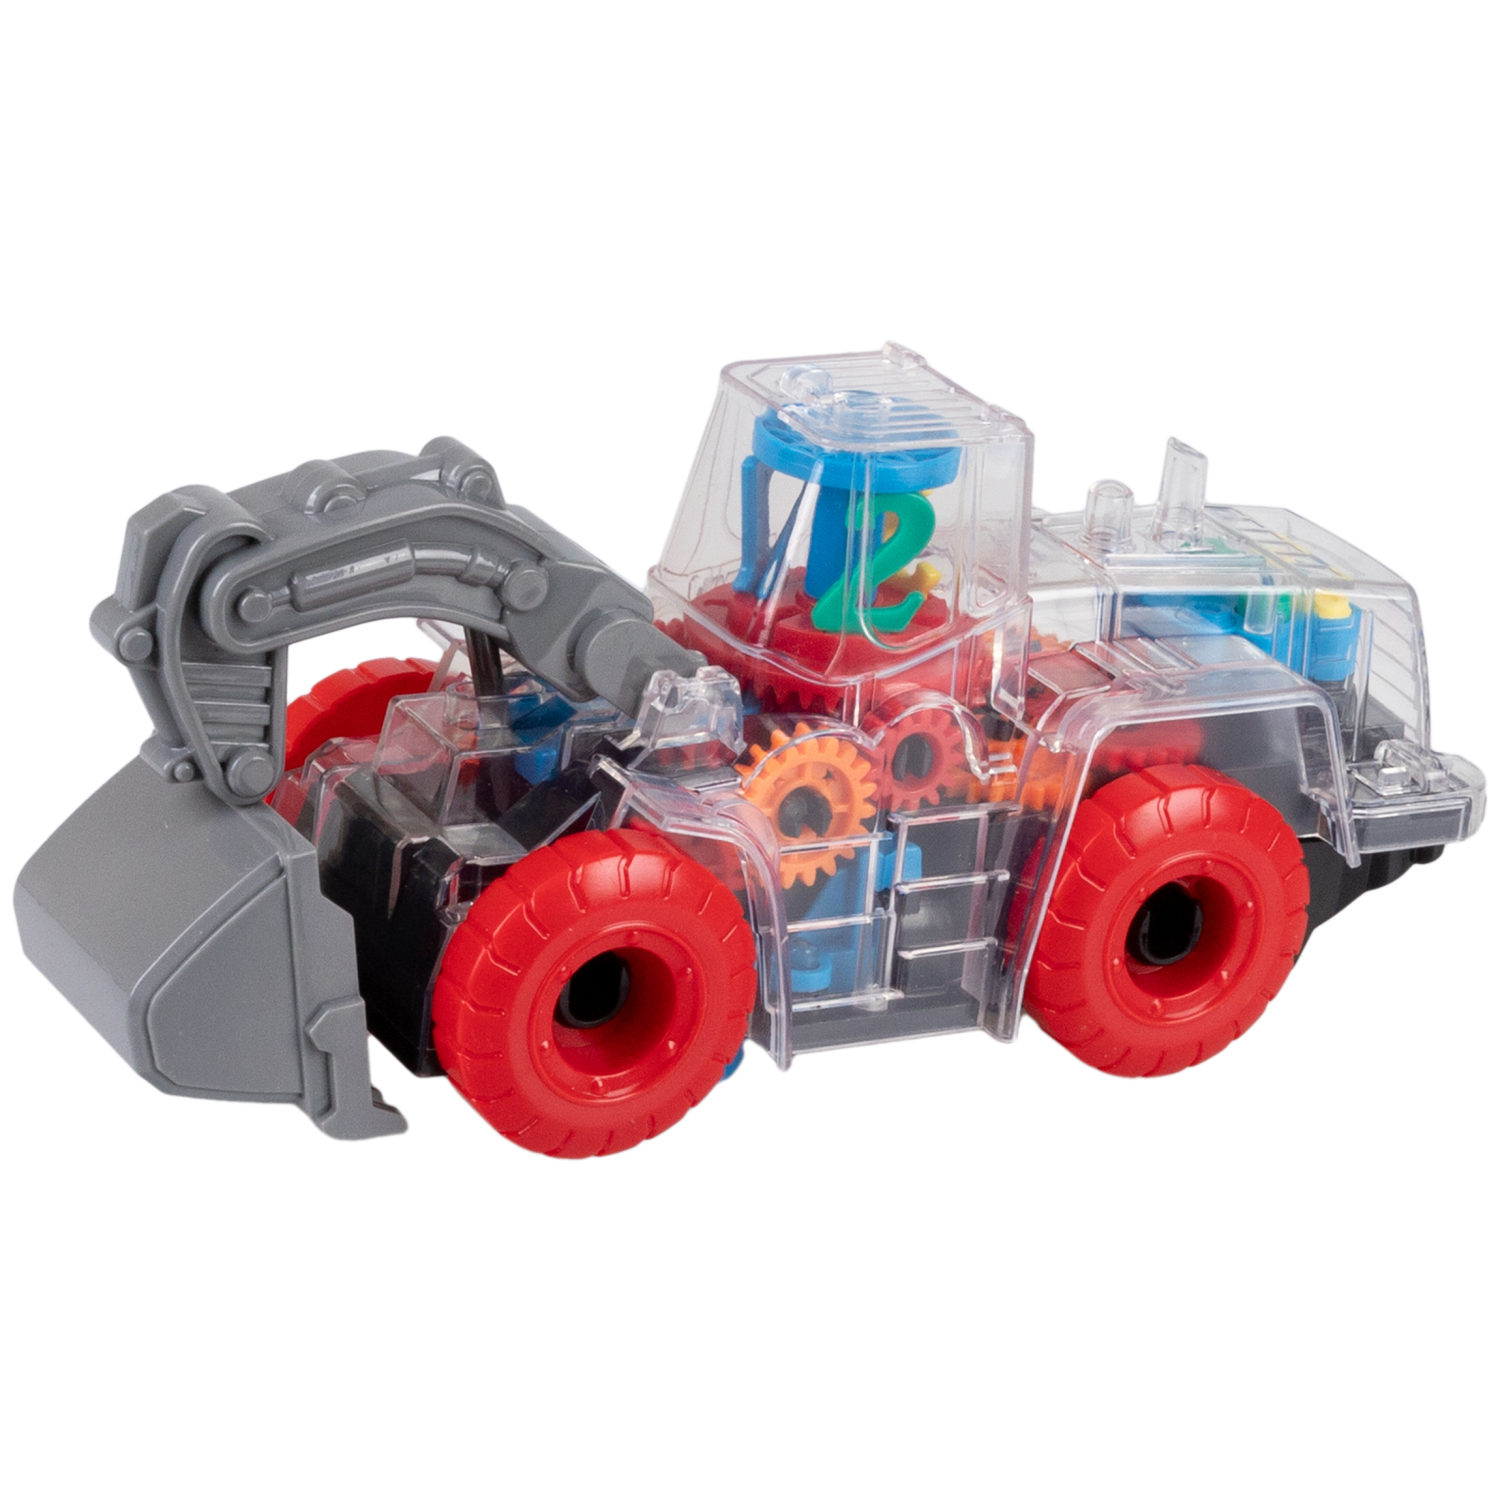 Машинка 1toy Движок Спецтехника с прозрачным с механизмом на батарейках, красный с синим chariots speed pipes машинка для трек туннеля на батарейках 022 8 с 5 лет